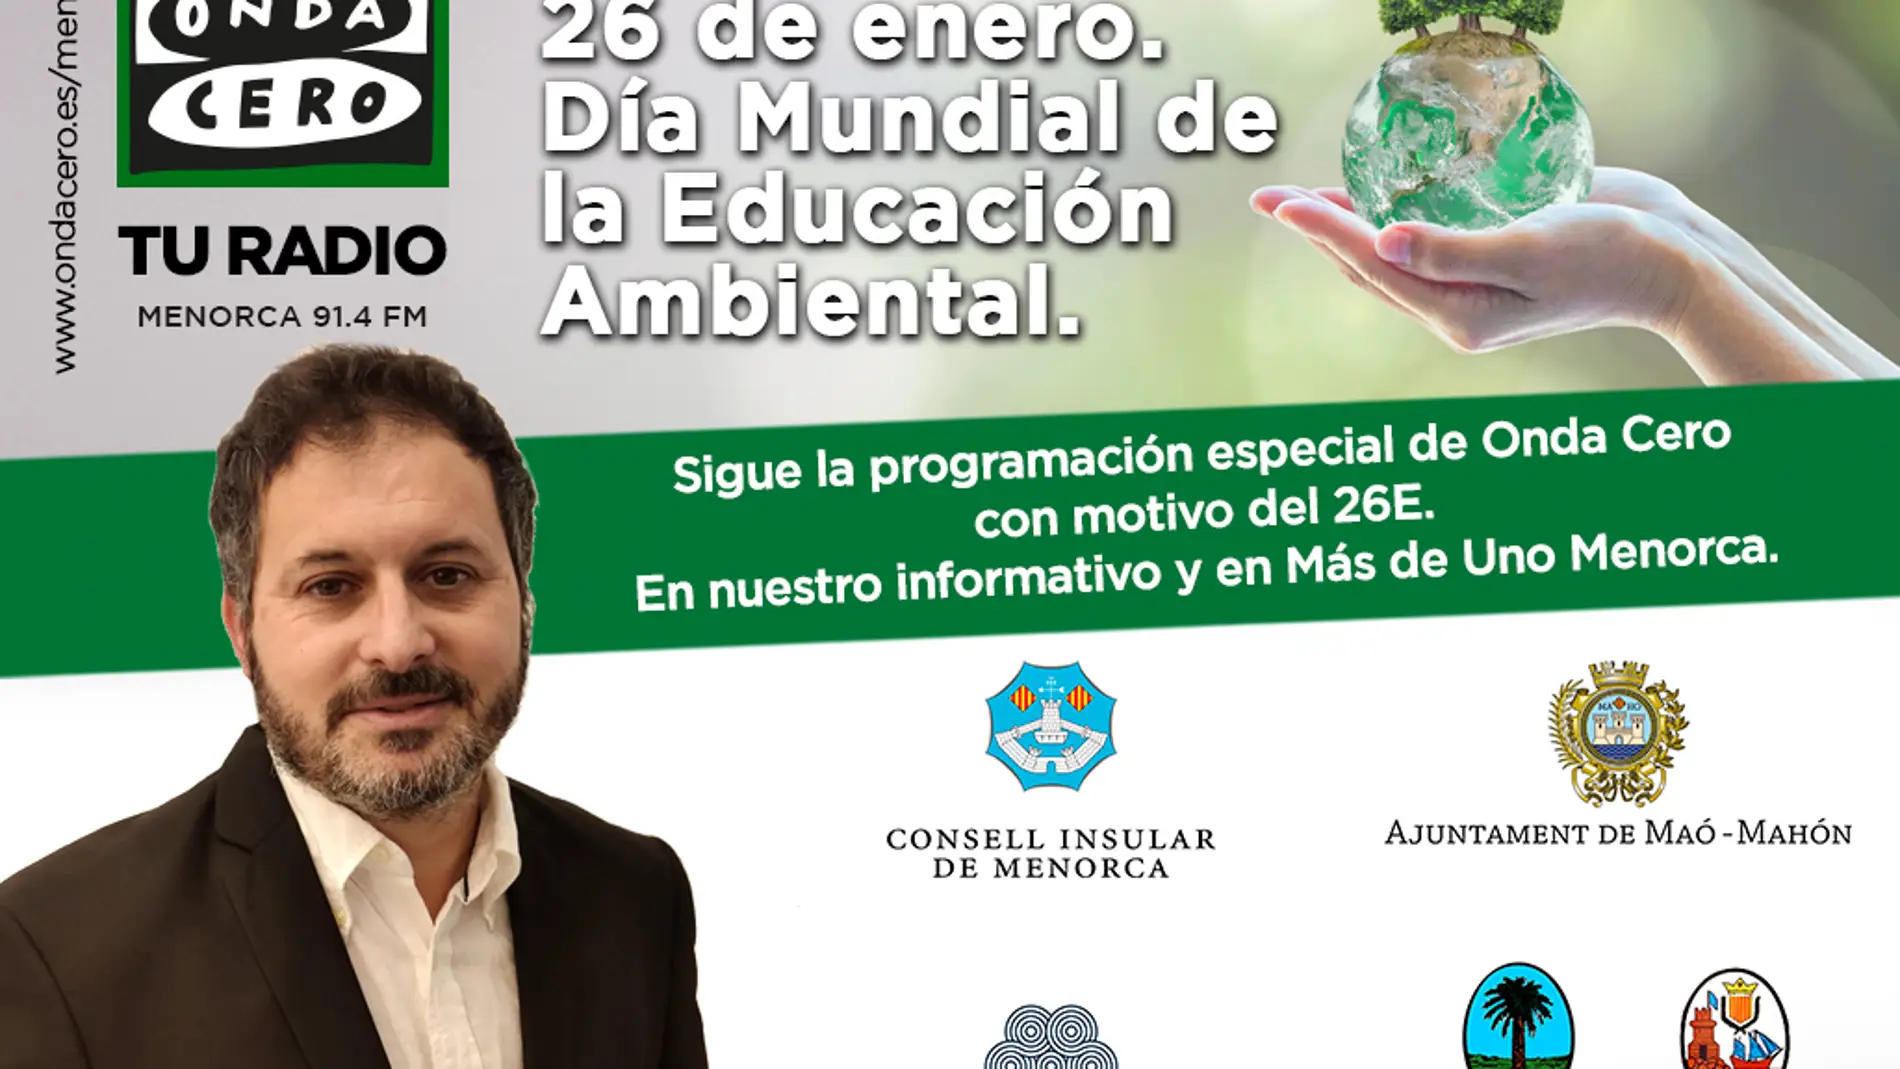 La educación ambiental protagoniza este miércoles la programación de Onda Cero Menorca